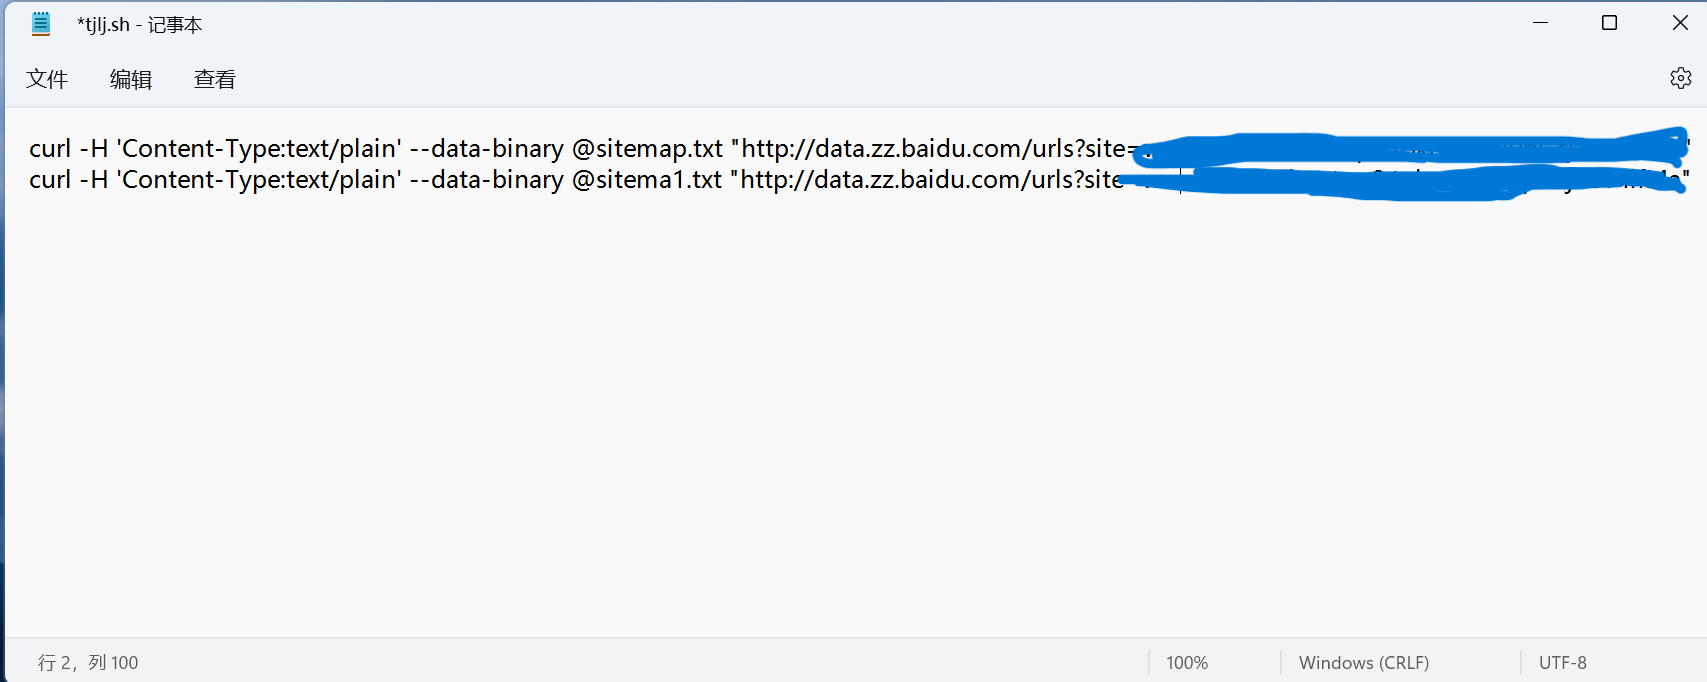 linux下宝塔网站链接自动提交设置方法----帮助小白。。。。。 linux,宝塔,网站,网站链接,链接